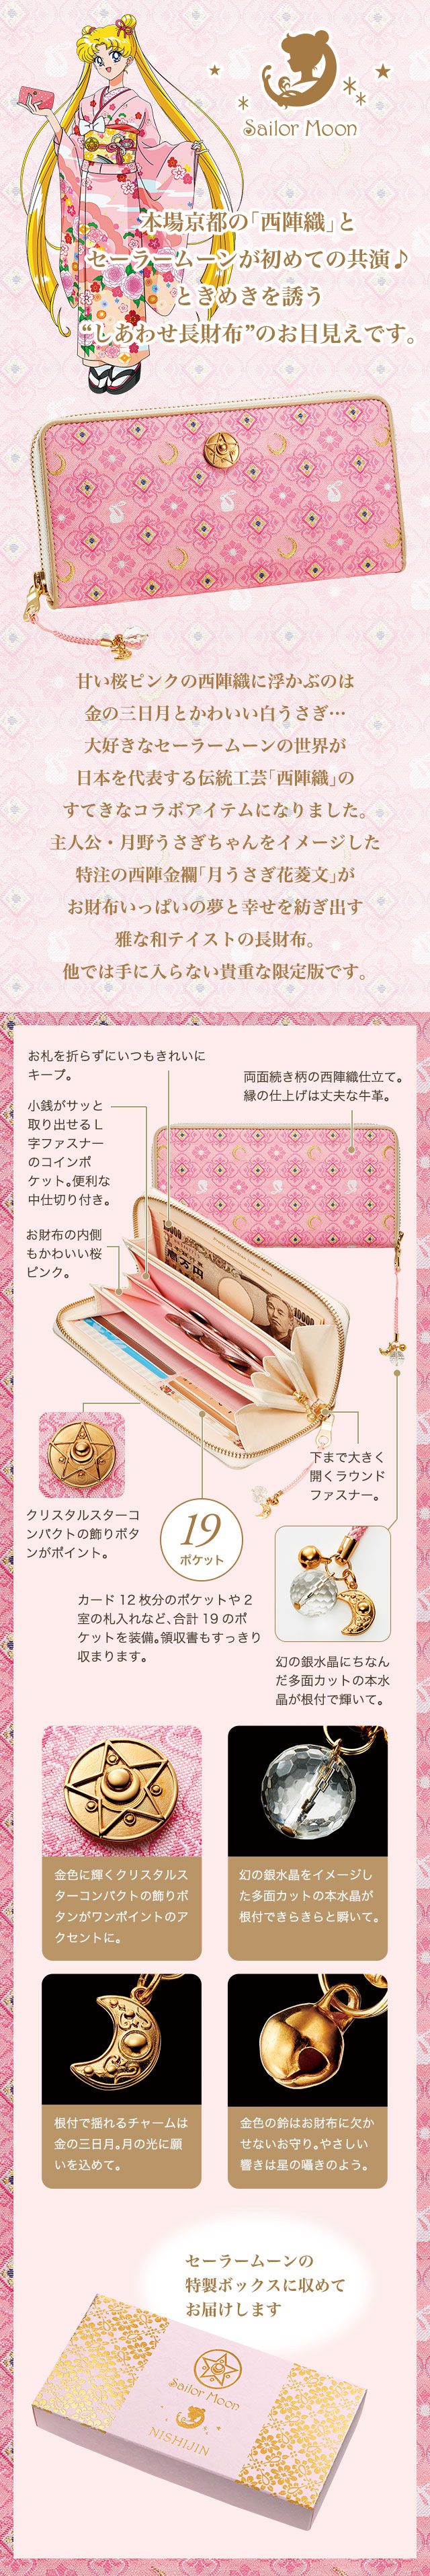 本場京都の「西陣織」とセーラームーンが初めての共演♪ときめきを誘う“しあわせ長財布”のお目見えです。　甘い桜ピンクの西陣織に浮かぶのは金の三日月とかわいい白うさぎ…大好きなセーラームーンの世界が日本を代表する伝統工芸「西陣織」のすてきなコラボアイテムになりました。主人公・月野うさぎちゃんをイメージした特注の西陣金襴「月うさぎ花菱文」がお財布いっぱいの夢と幸せを紡ぎ出す雅な和テイストの長財布。他では手に入らない貴重な限定版です。